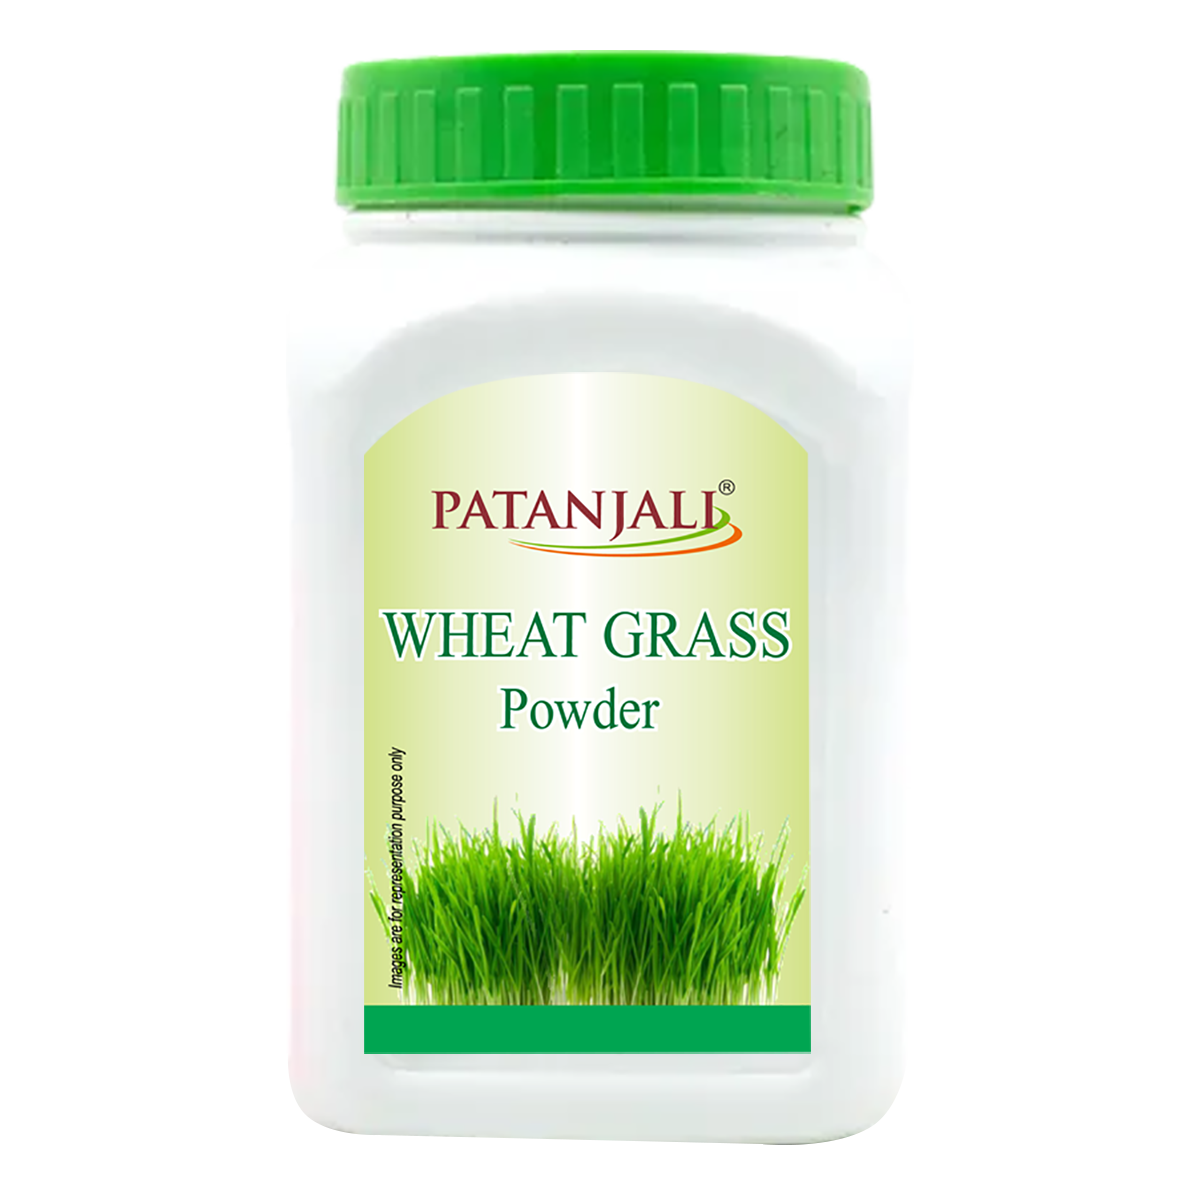 Patanjali Wheat Grass Powder 